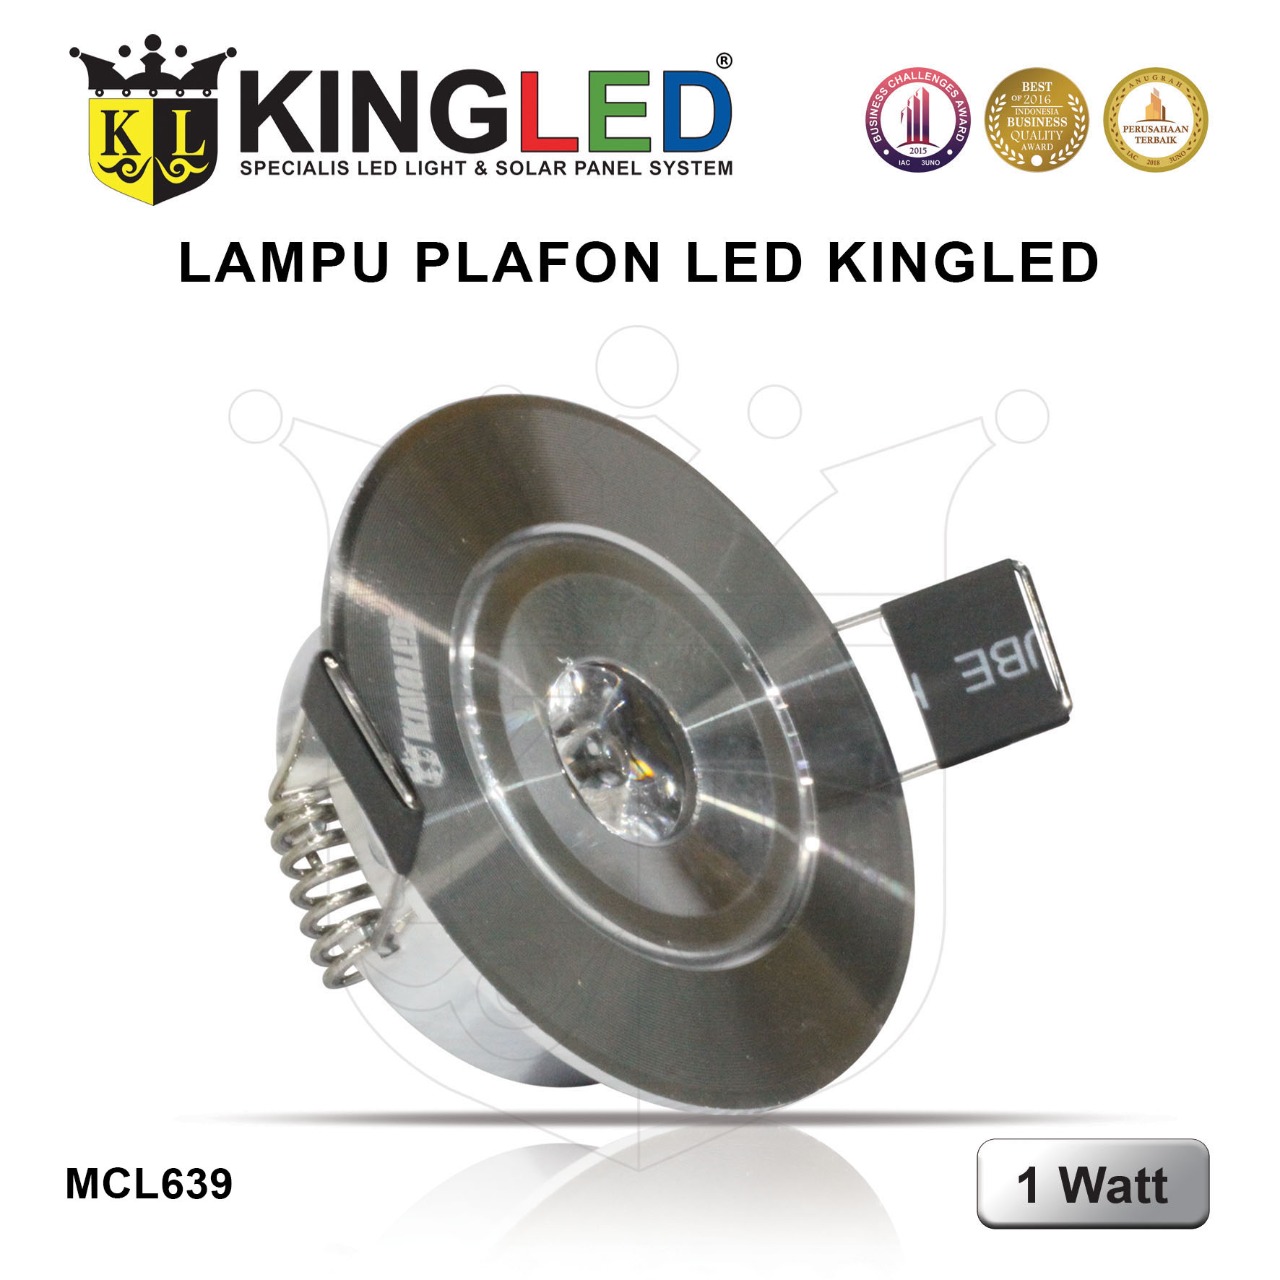 Lampu Plafon LED 1 Watt / LED  DownLight 1 Watt